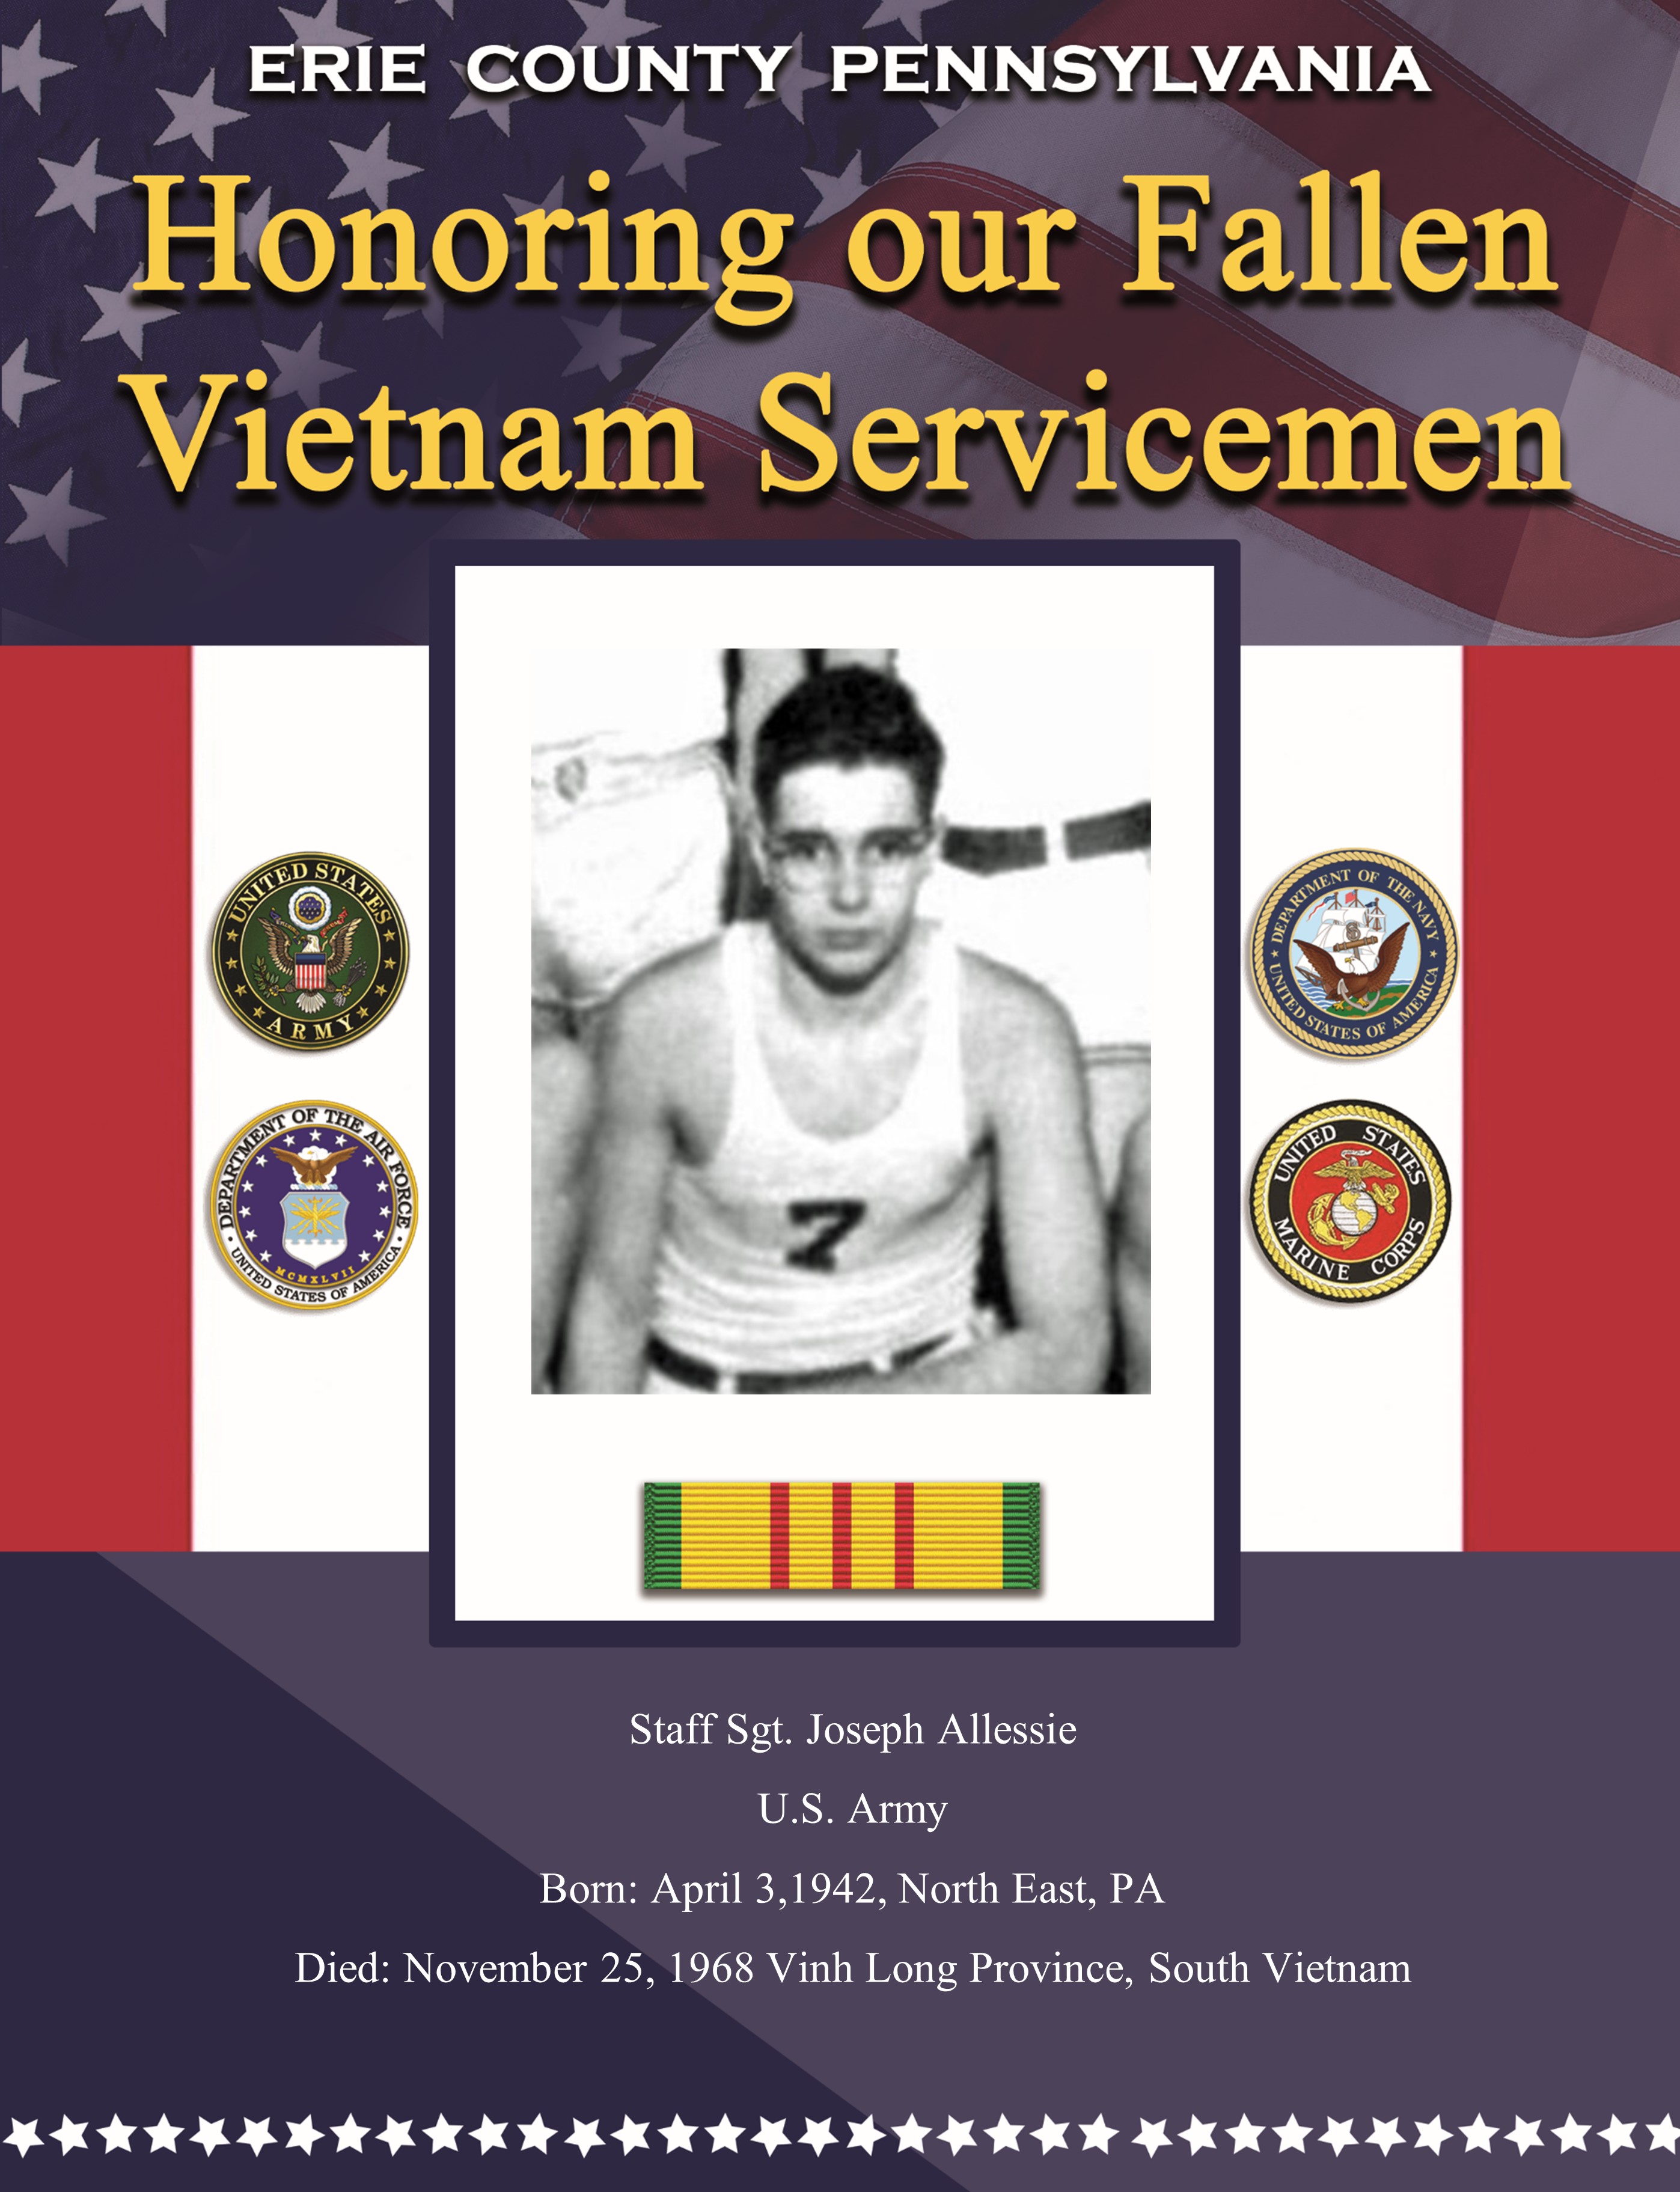 Fallen in Vietnam 39